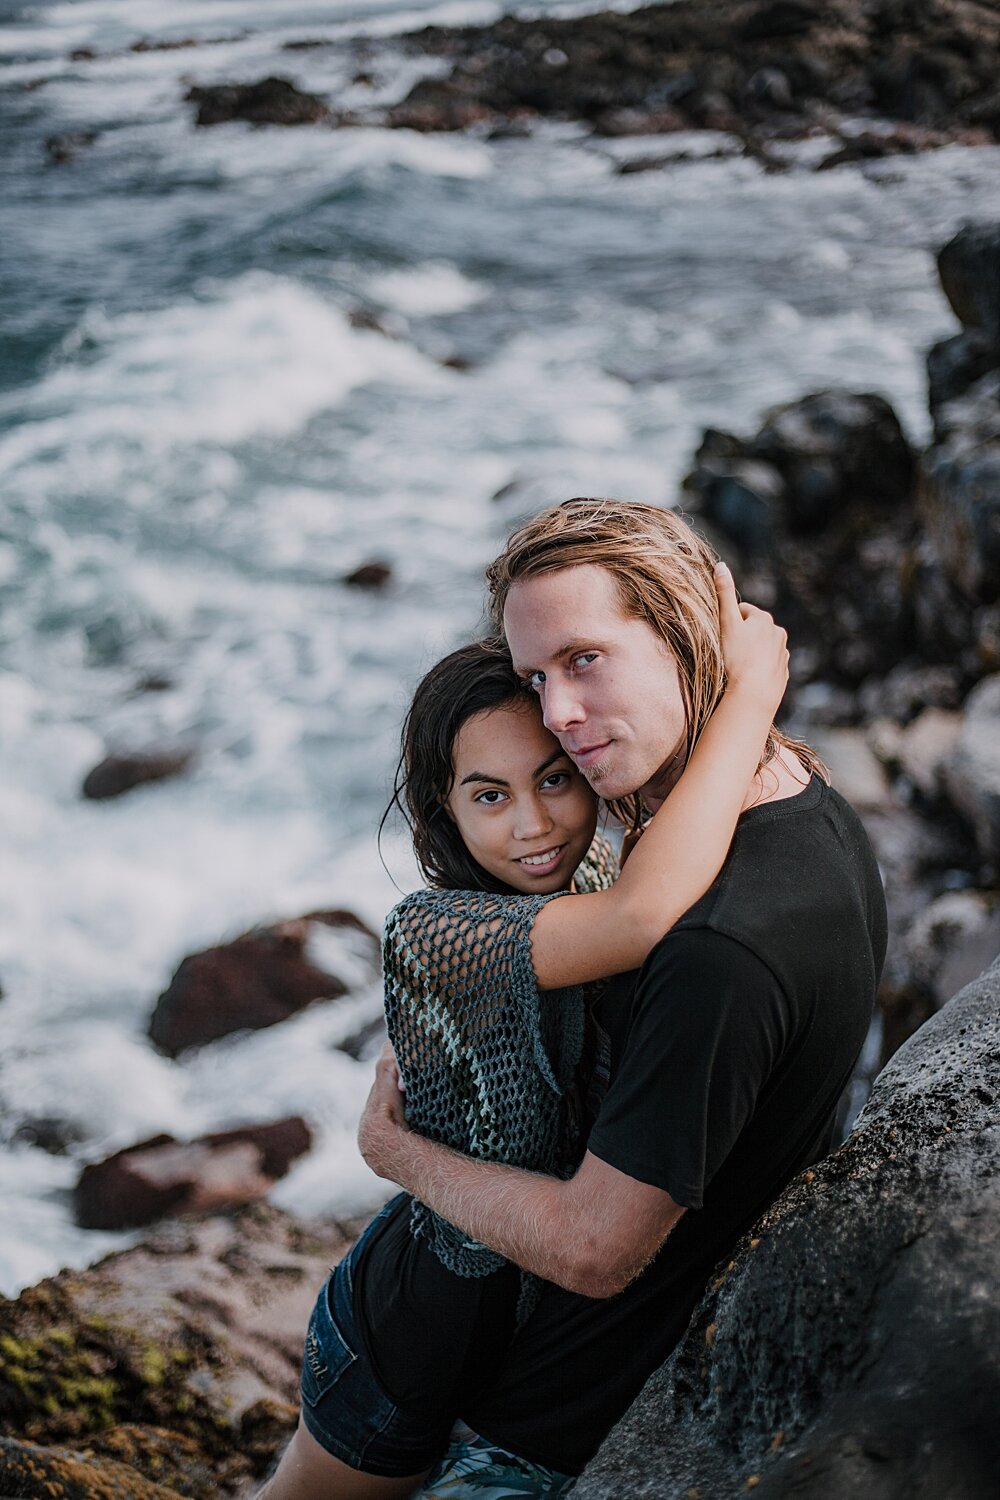 kissing on volcanic lava rocks on ho'okipa beach, couple hiking ho'okipa, maui hawaii photographer, maui hawaii surfing, surfing at ho'okipa beach, ho'okipa beach engagements, motorcycle engagements